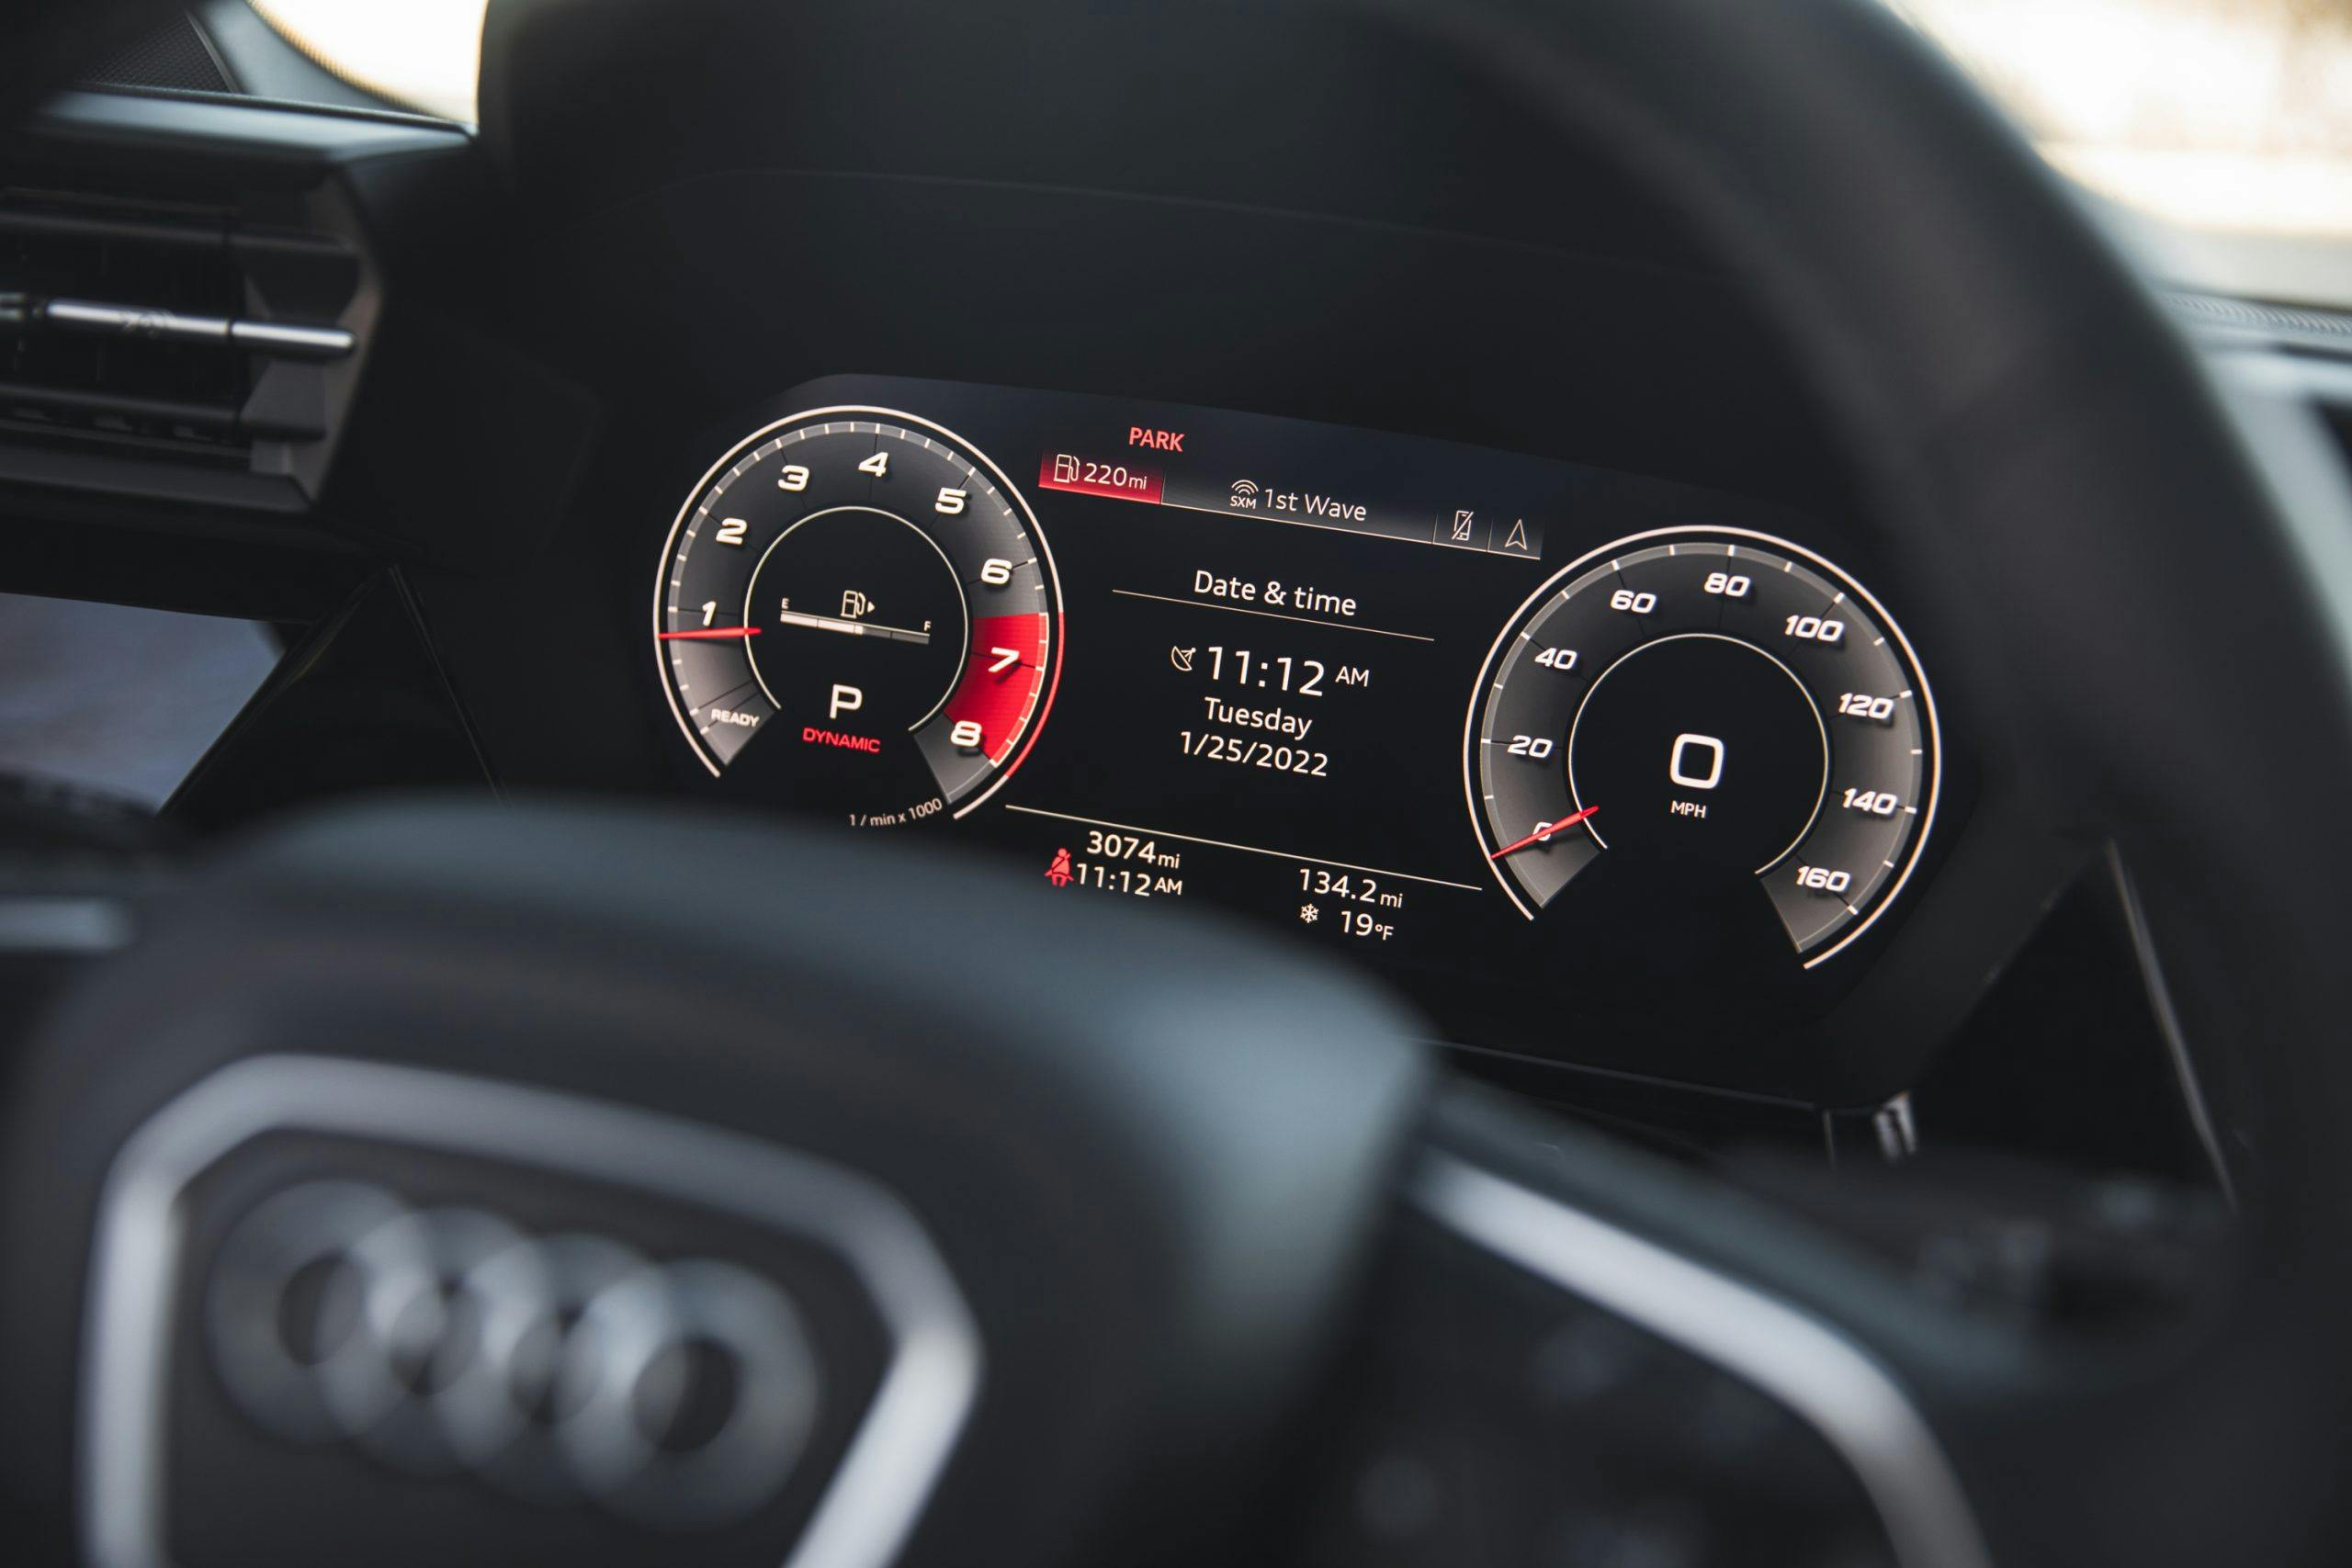 2022 Audi S3 interior digital dash gauge display